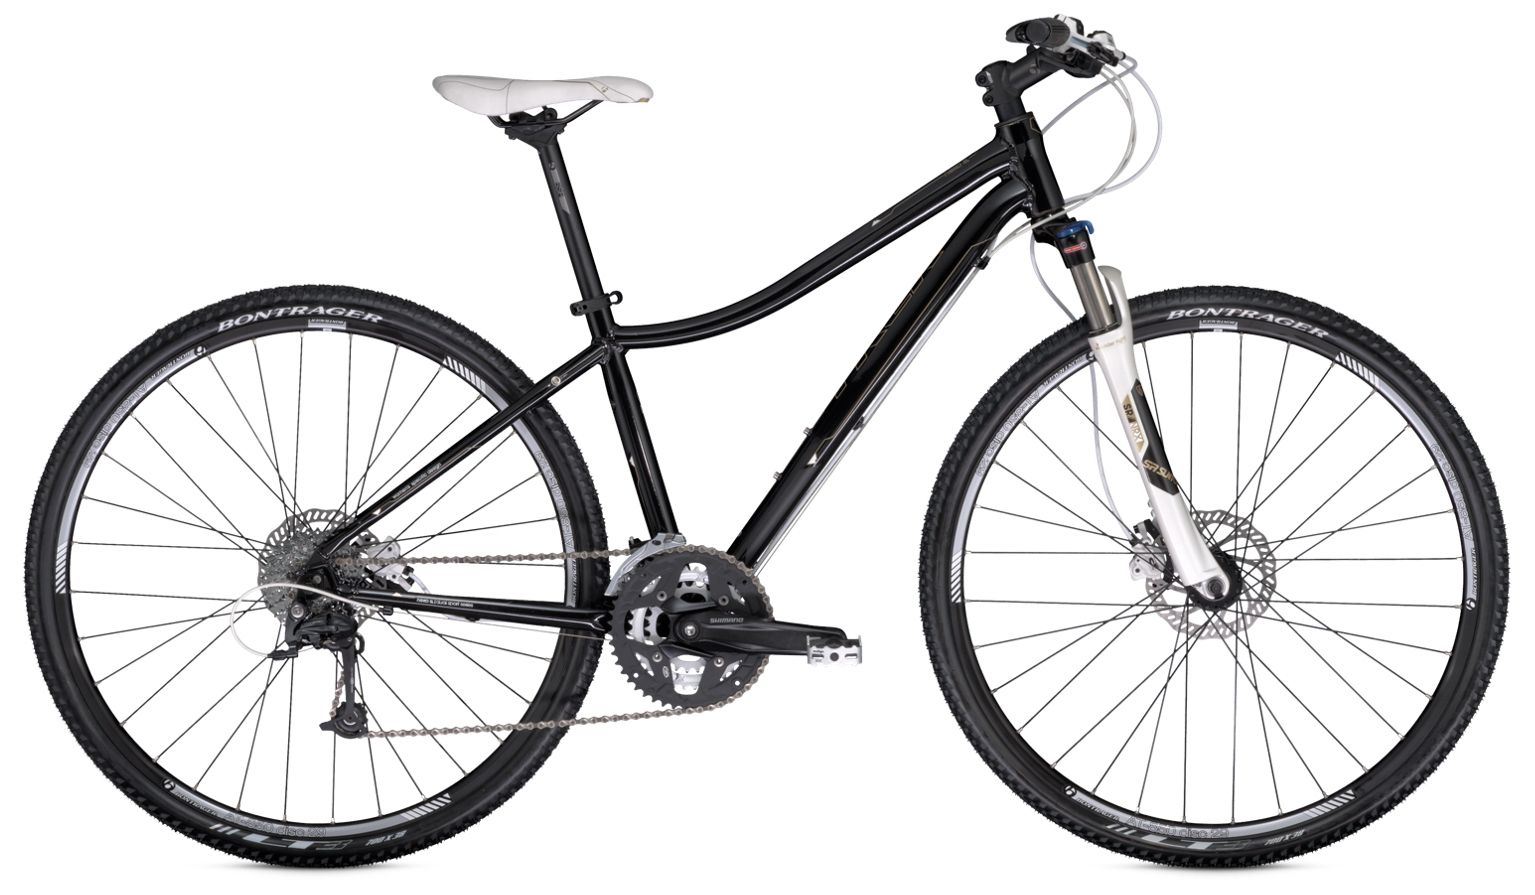  Отзывы о Женском велосипеде Trek Neko SL WSD 2014